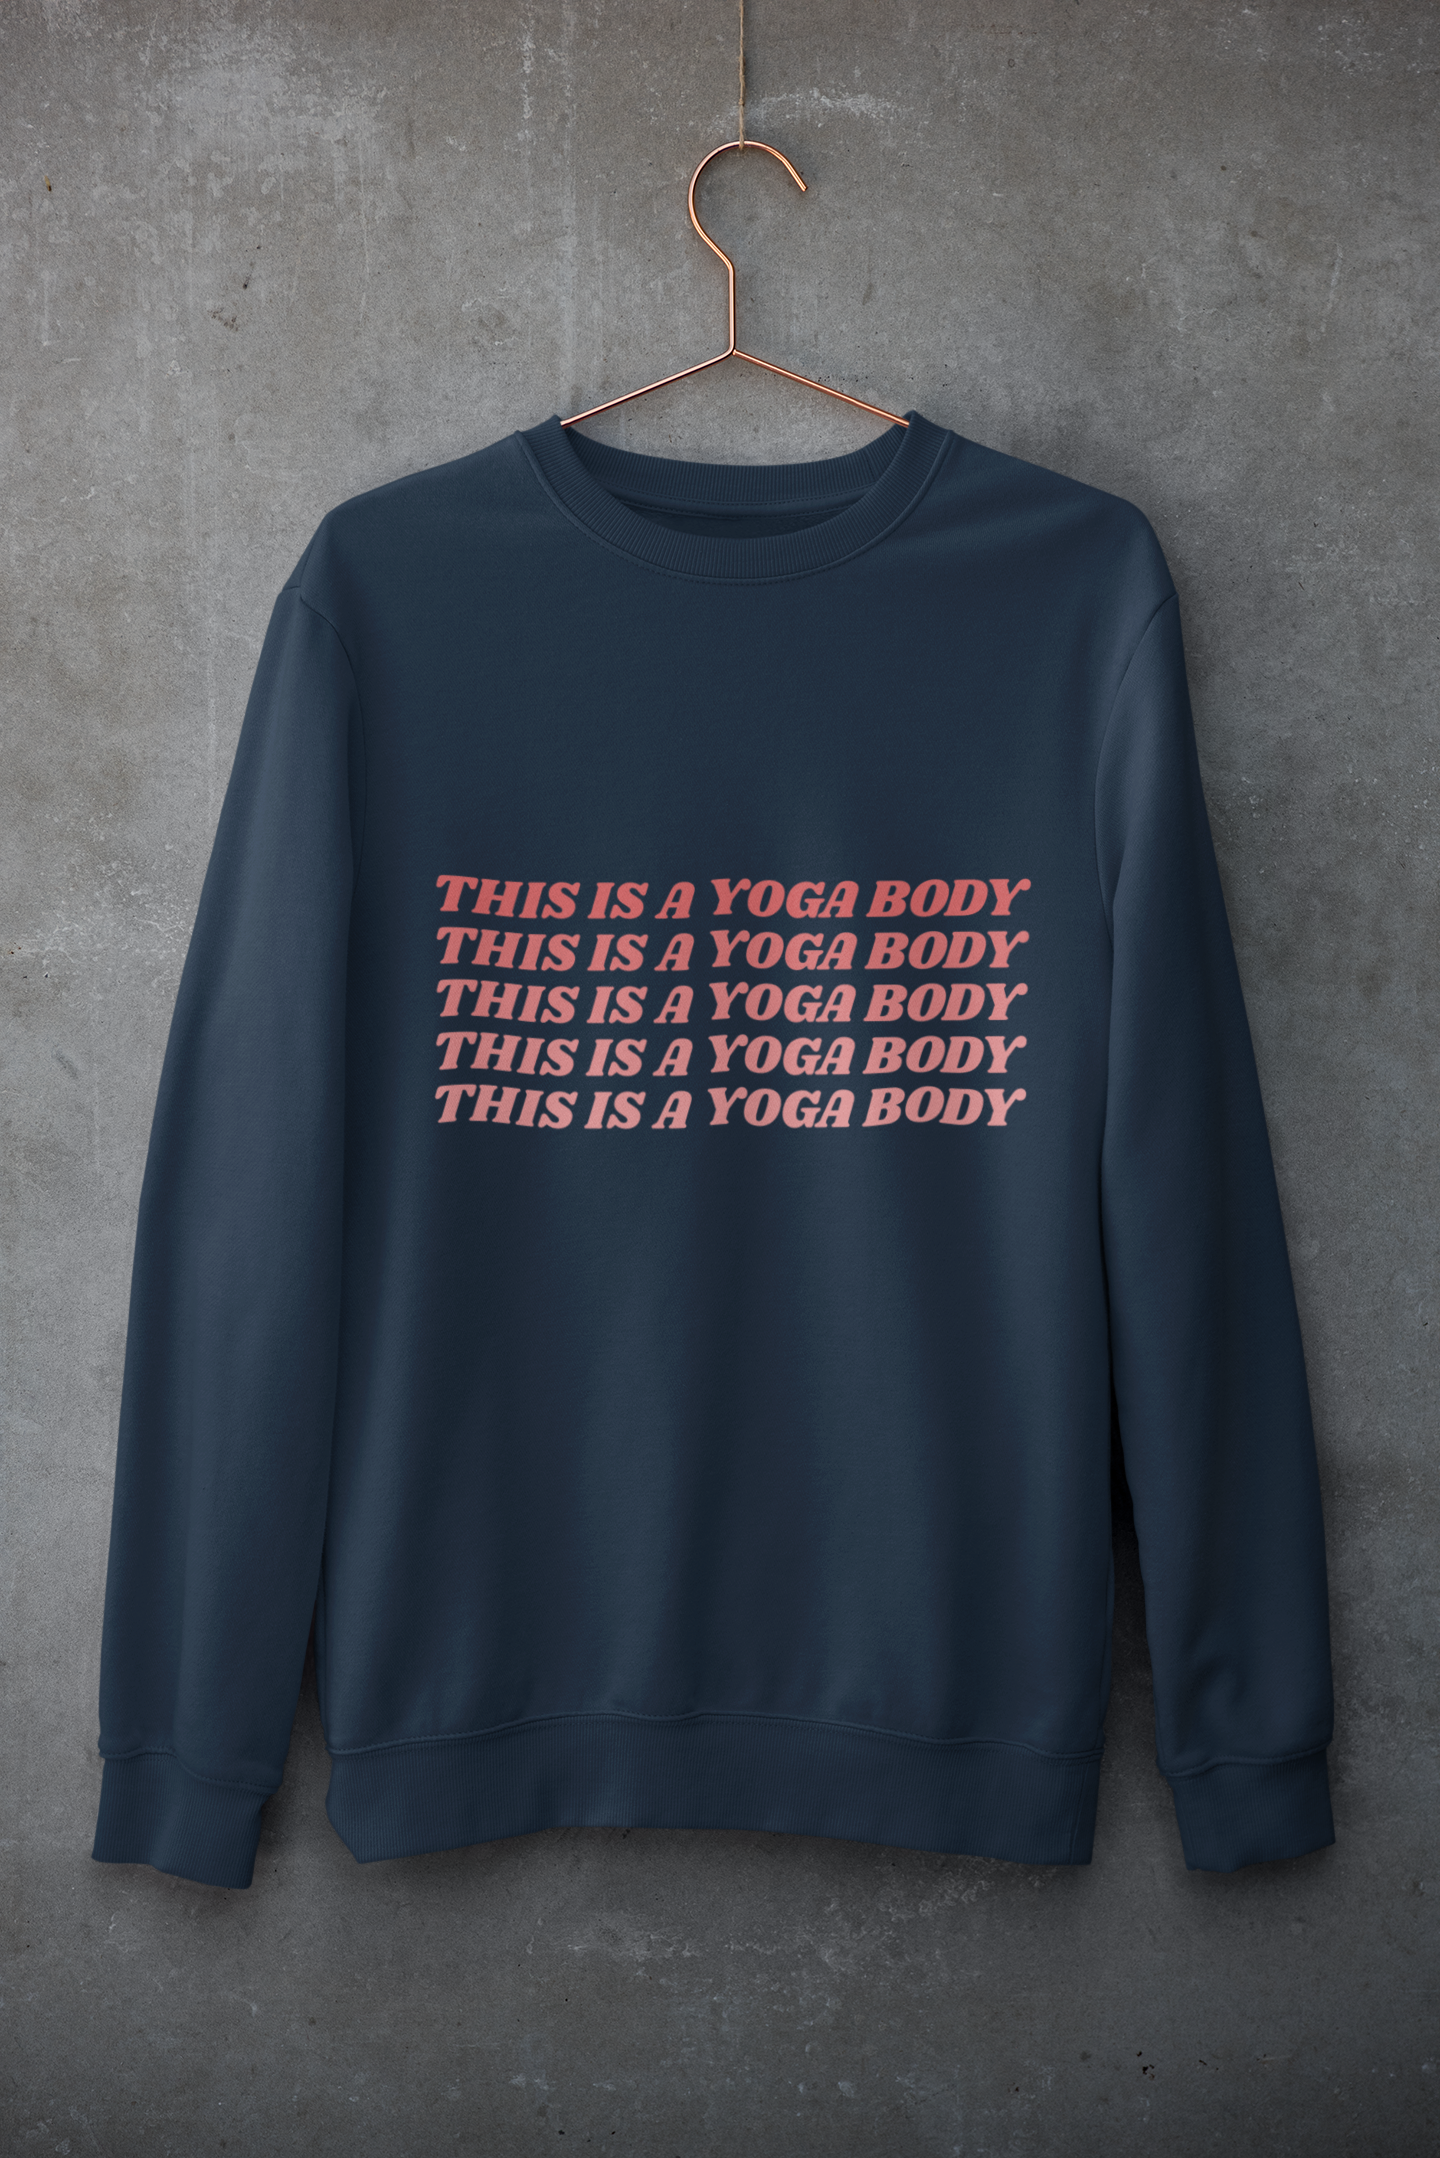 The Yoga Body Sweatshirt